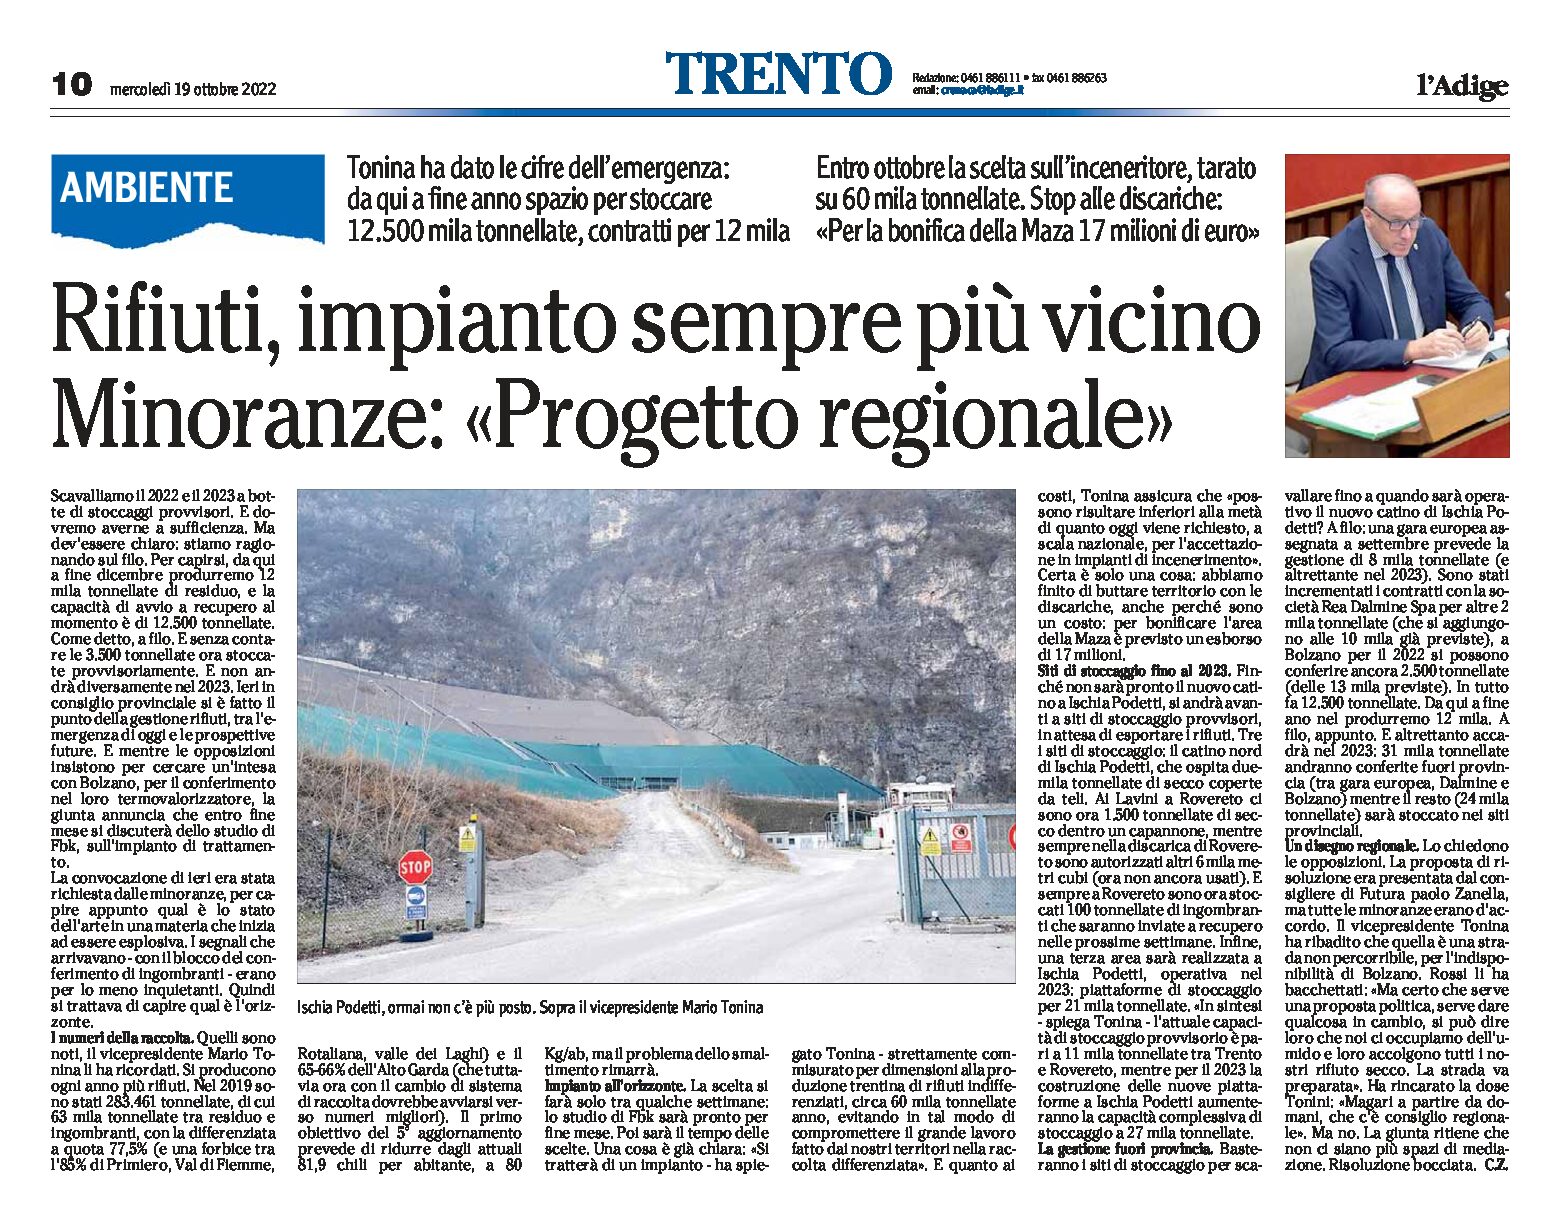 Trentino, rifiuti: impianto sempre più vicino. Minoranze “progetto regionale”